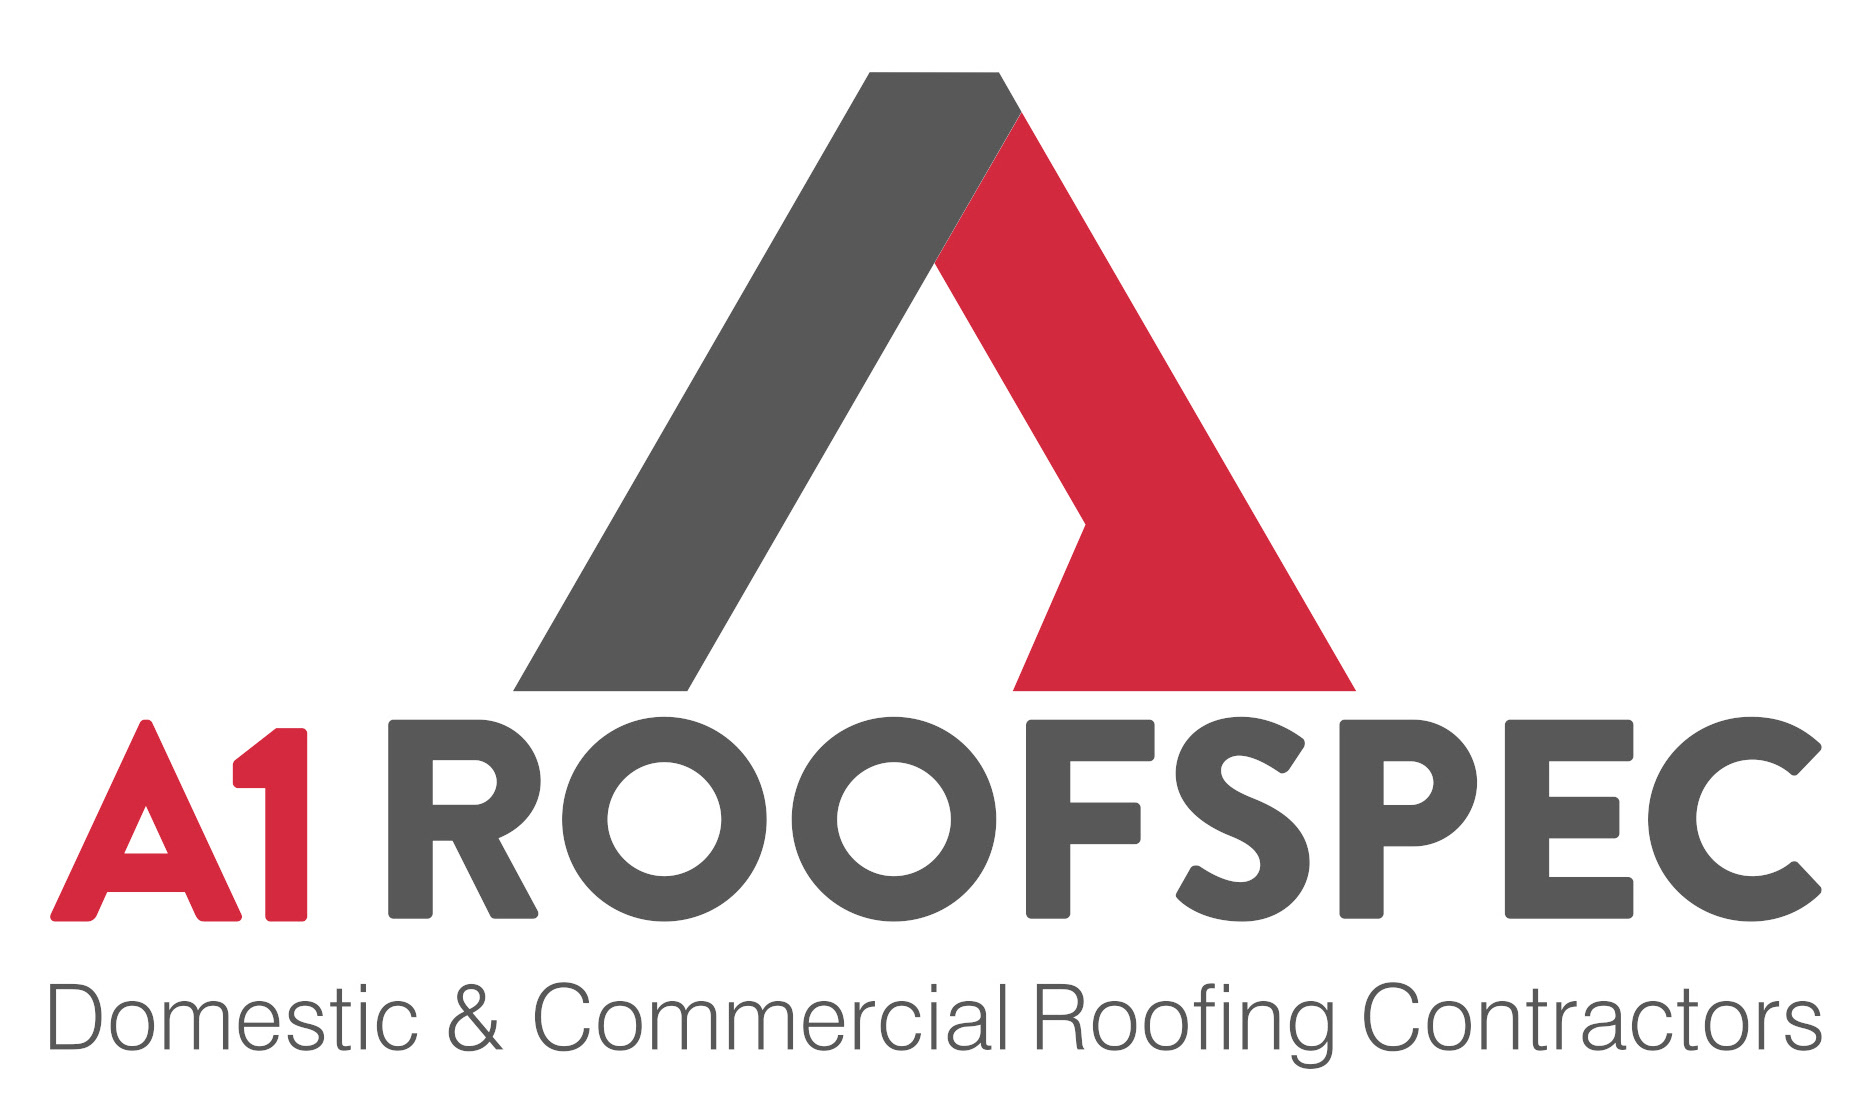 A1 Roofspec logo 1.jpg